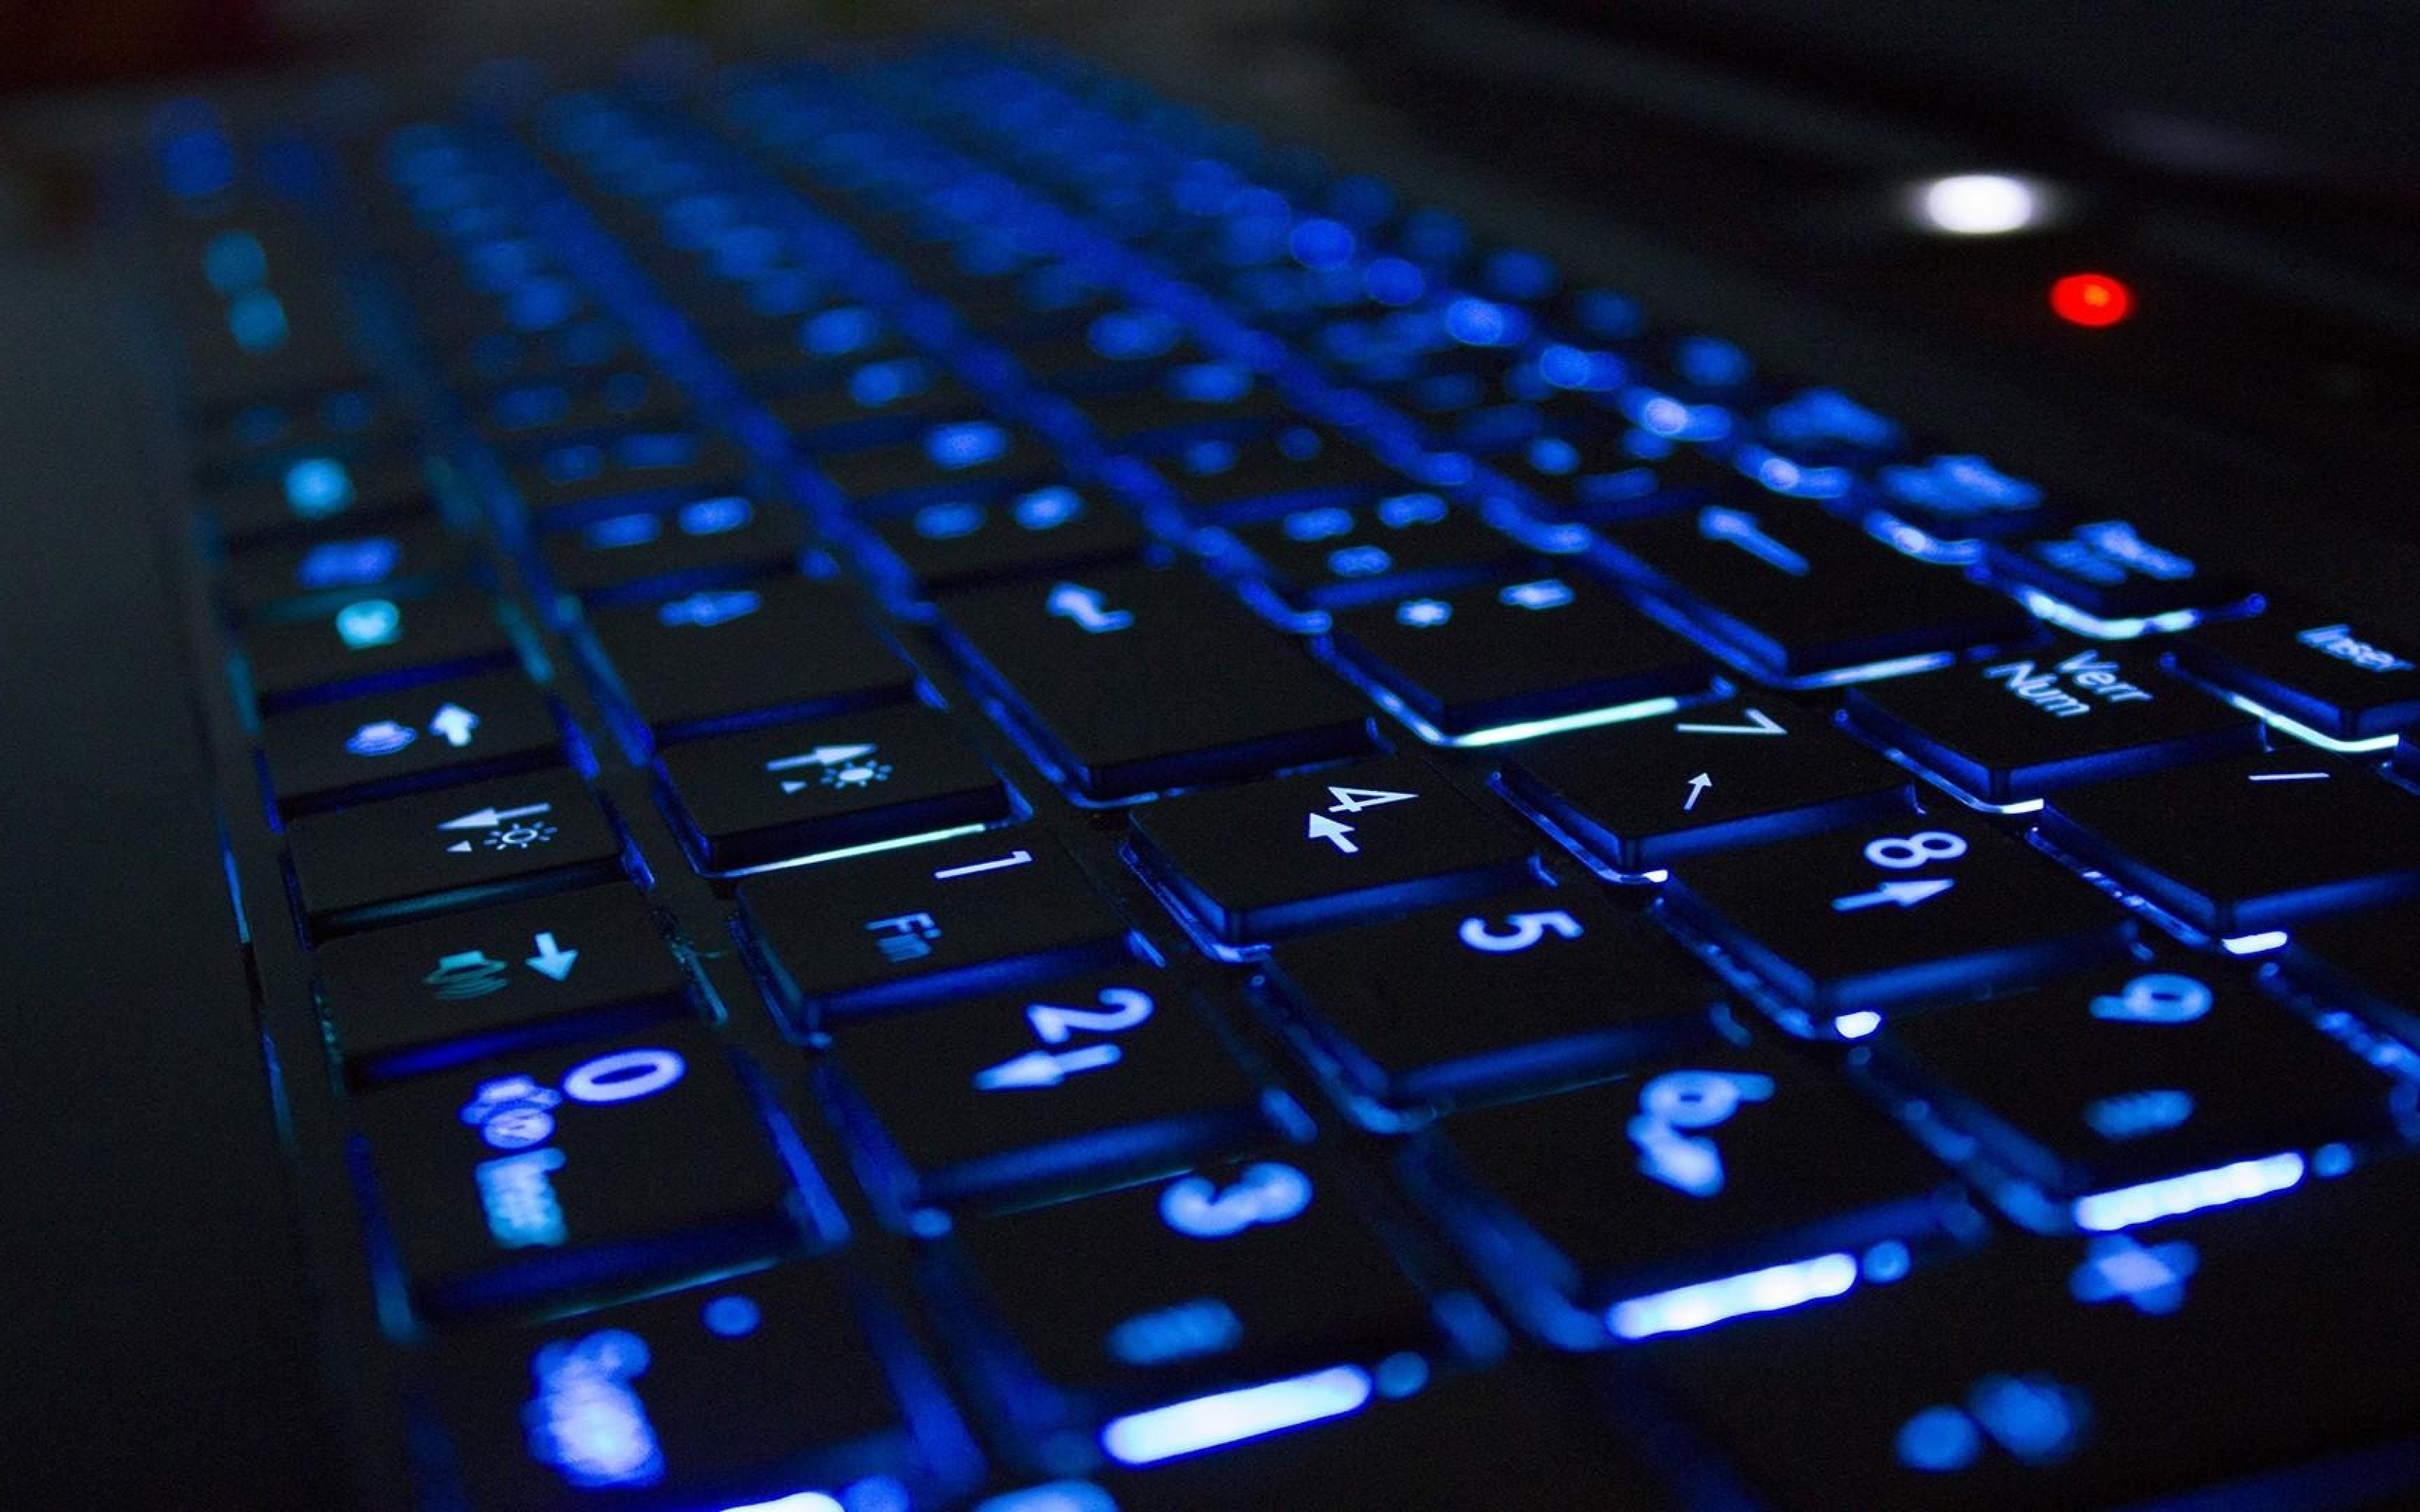 Image: Keyboard, keys, numbers, numpad, backlight, blue light